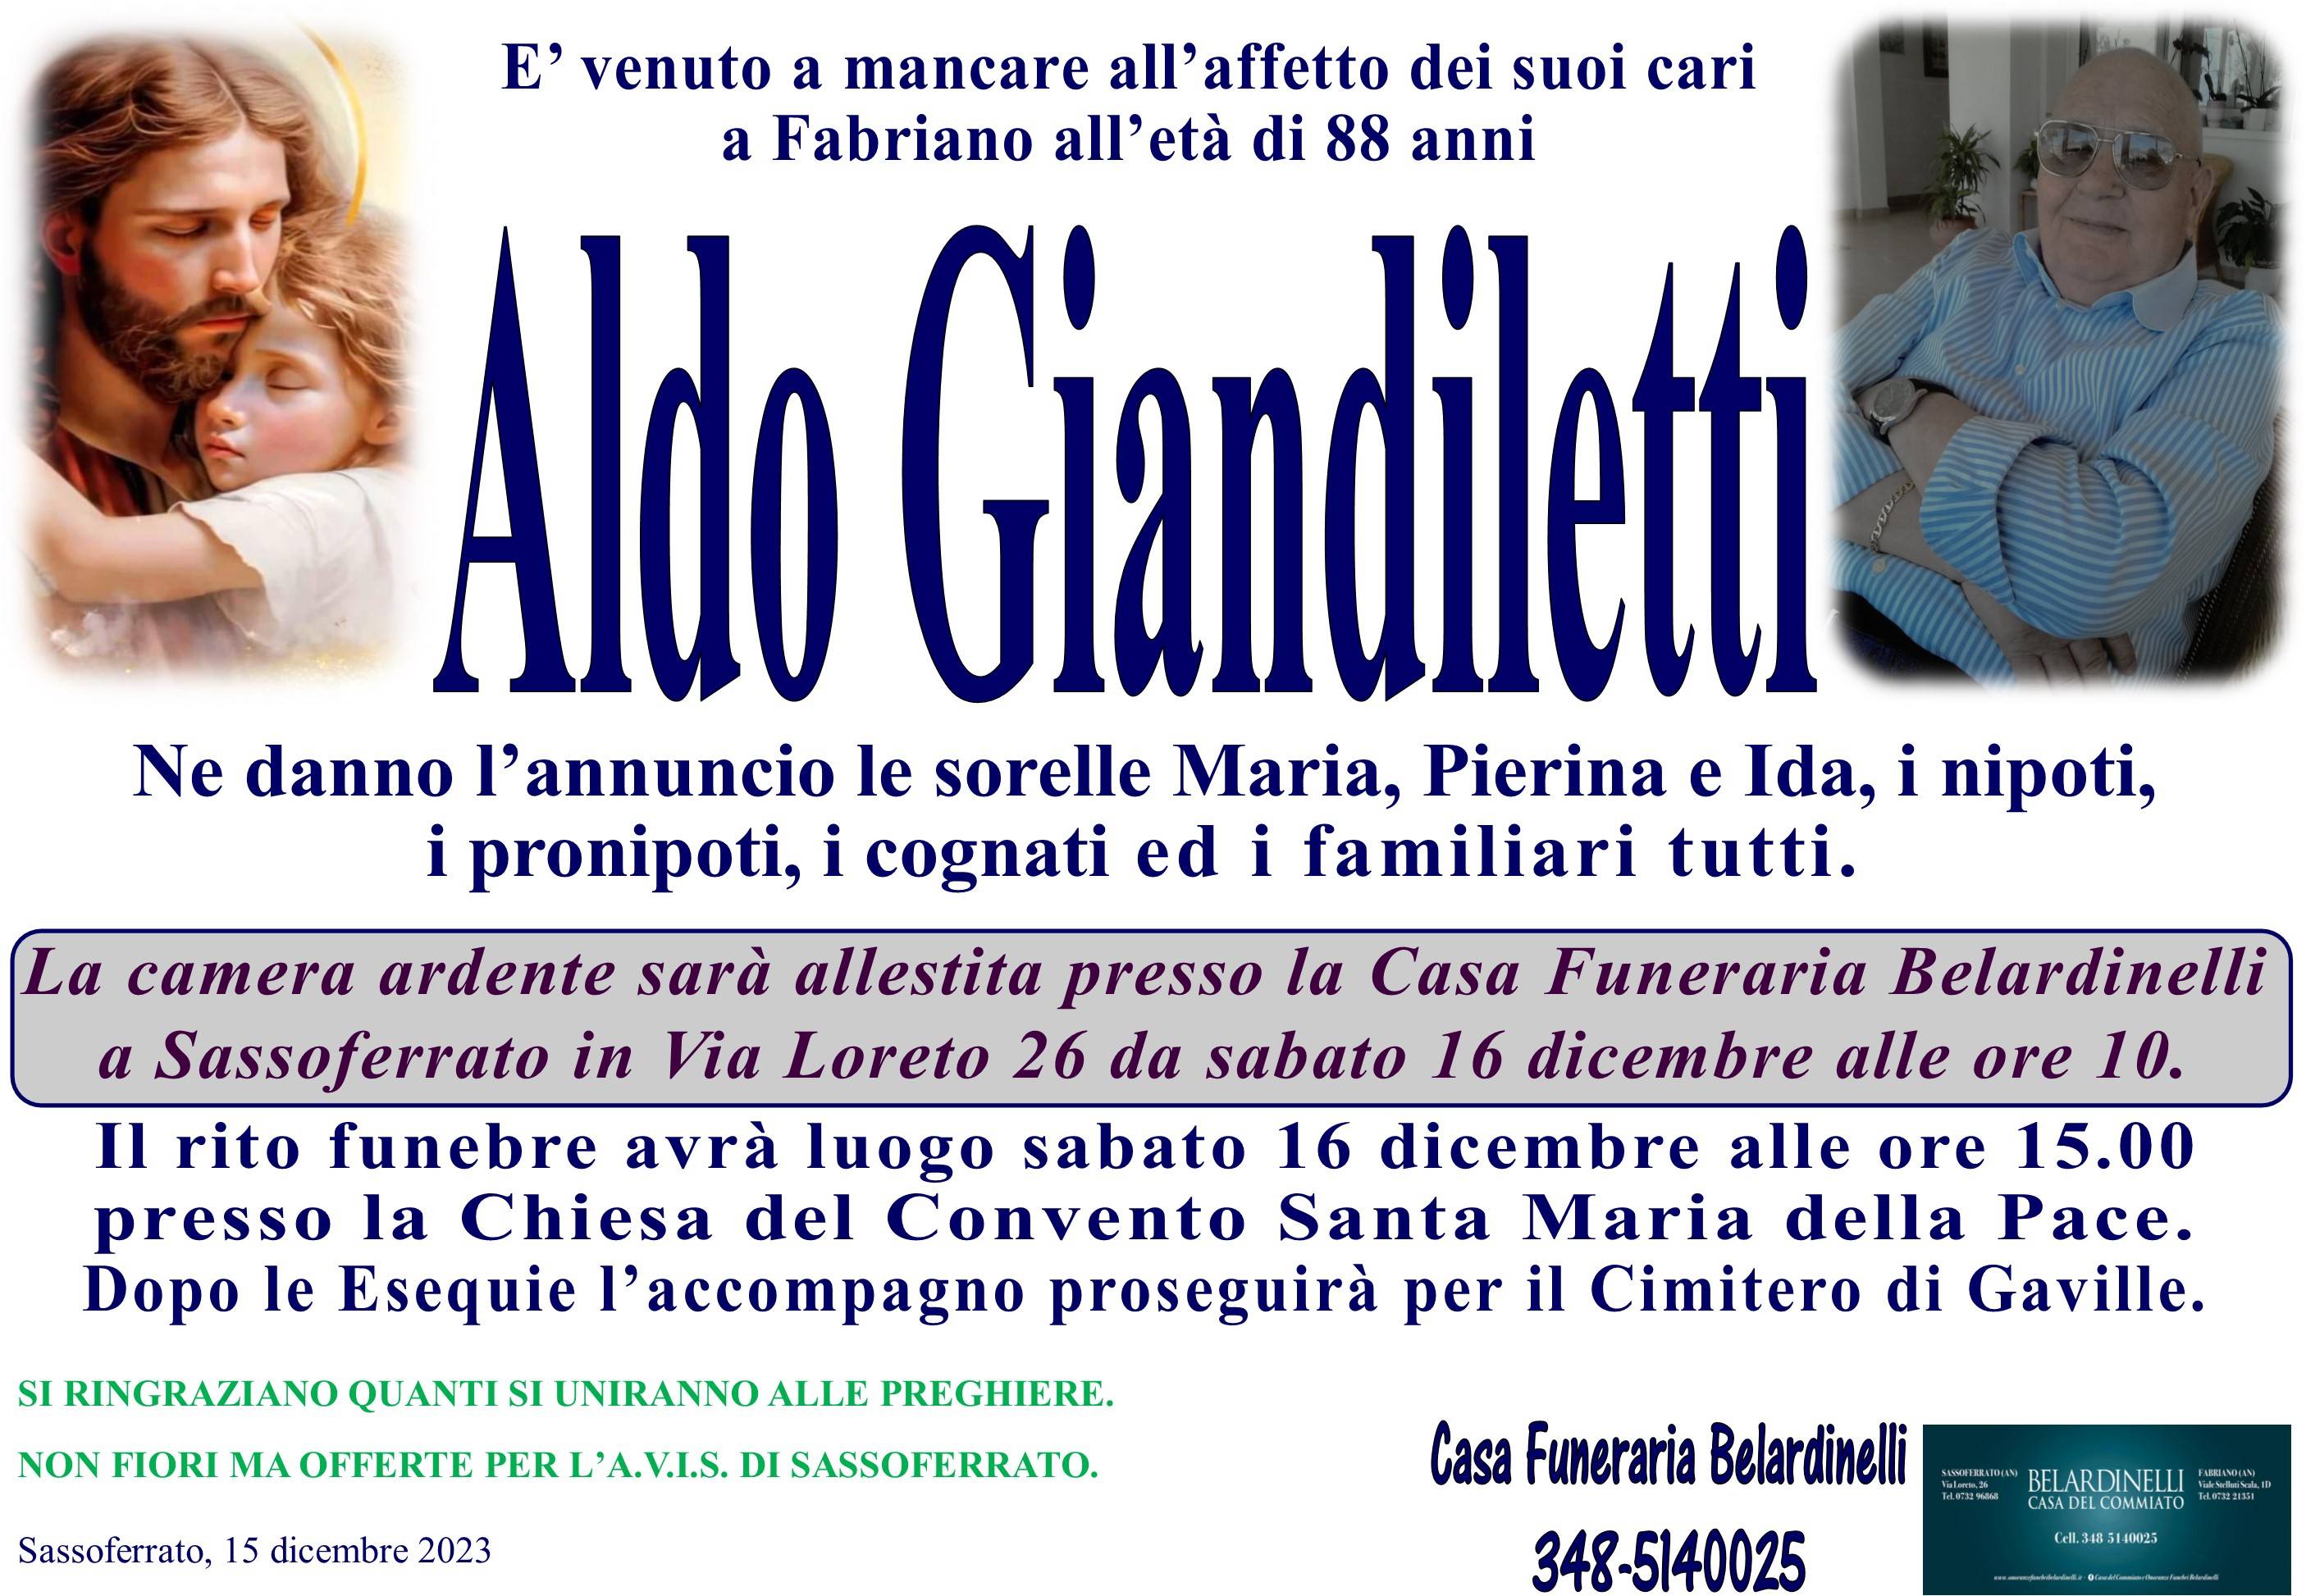 Aldo Giandiletti